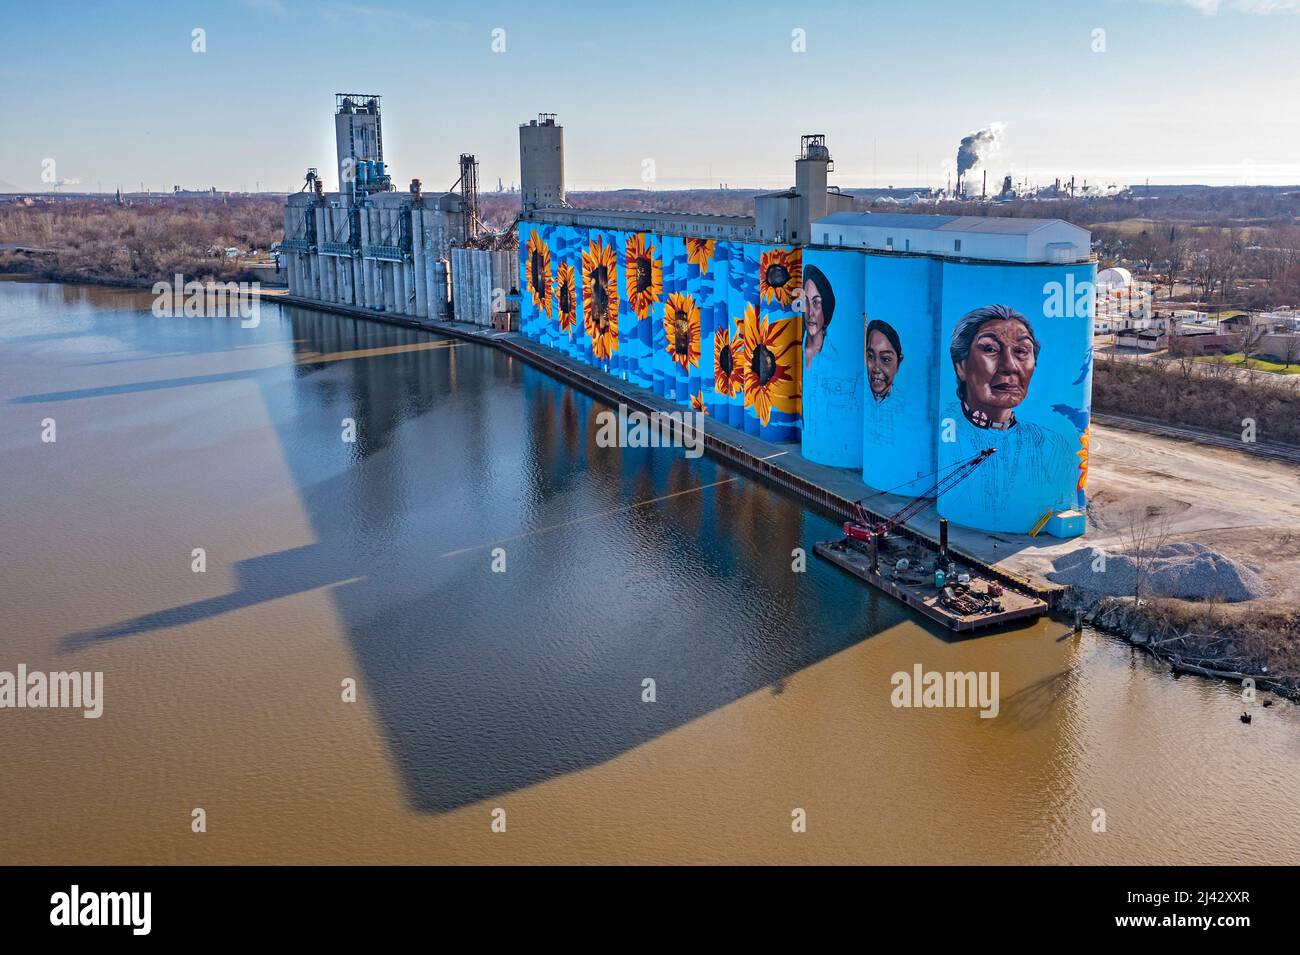 Toledo, Ohio - le mur de la rivière Glass City, une murale de tournesol de Gabe Gault, peint sur les silos à grains ADM de la rivière Maumee. Banque D'Images